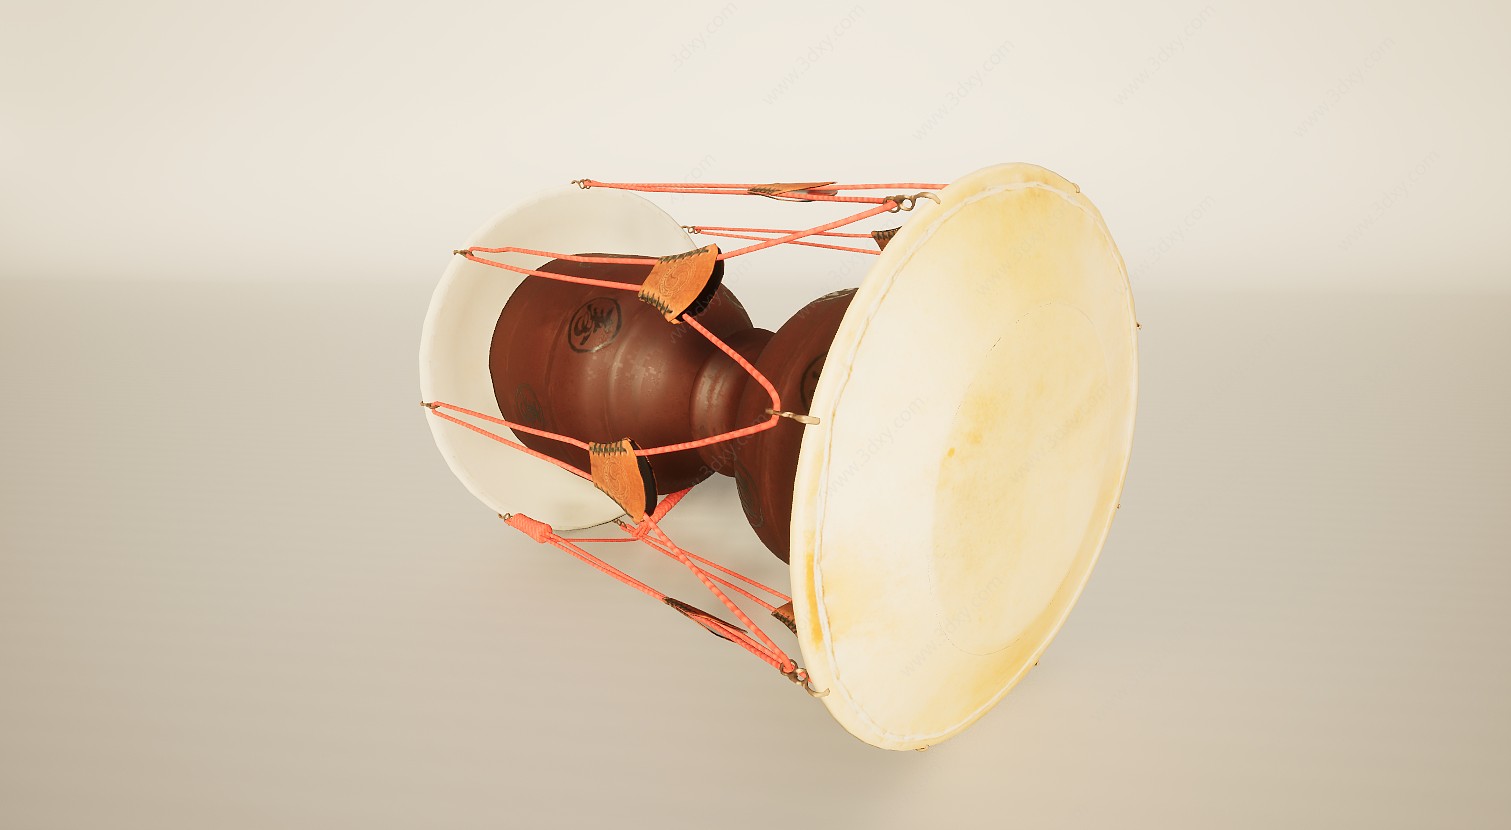 打击乐器鼓朝鲜长鼓3D模型